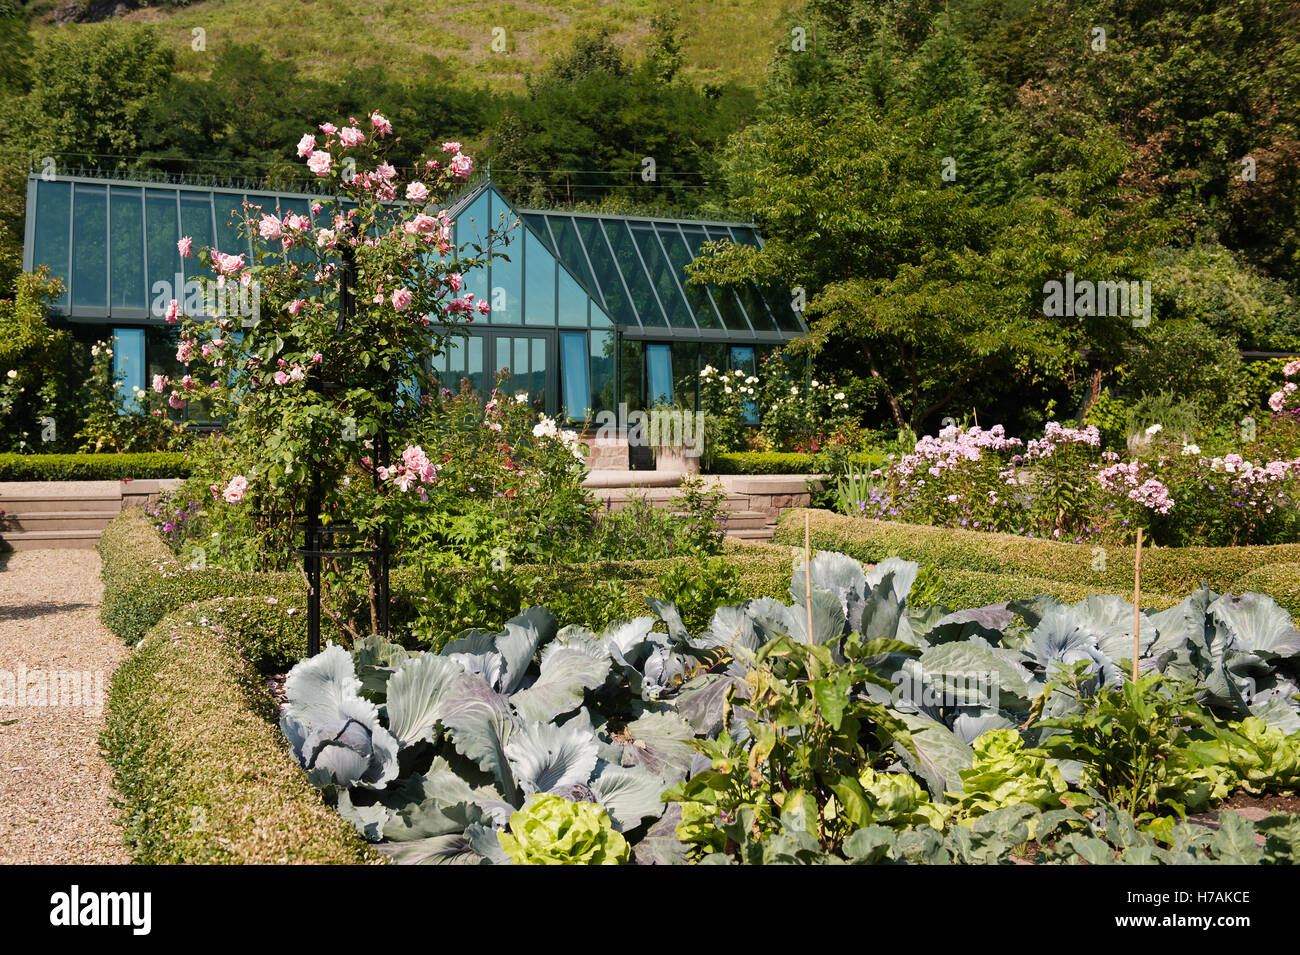 Glasfassade und Rosenstrauch mit Gemüsegarten in Boppard Garten, Rheinland-Pfalz, Deutschland Stockfoto